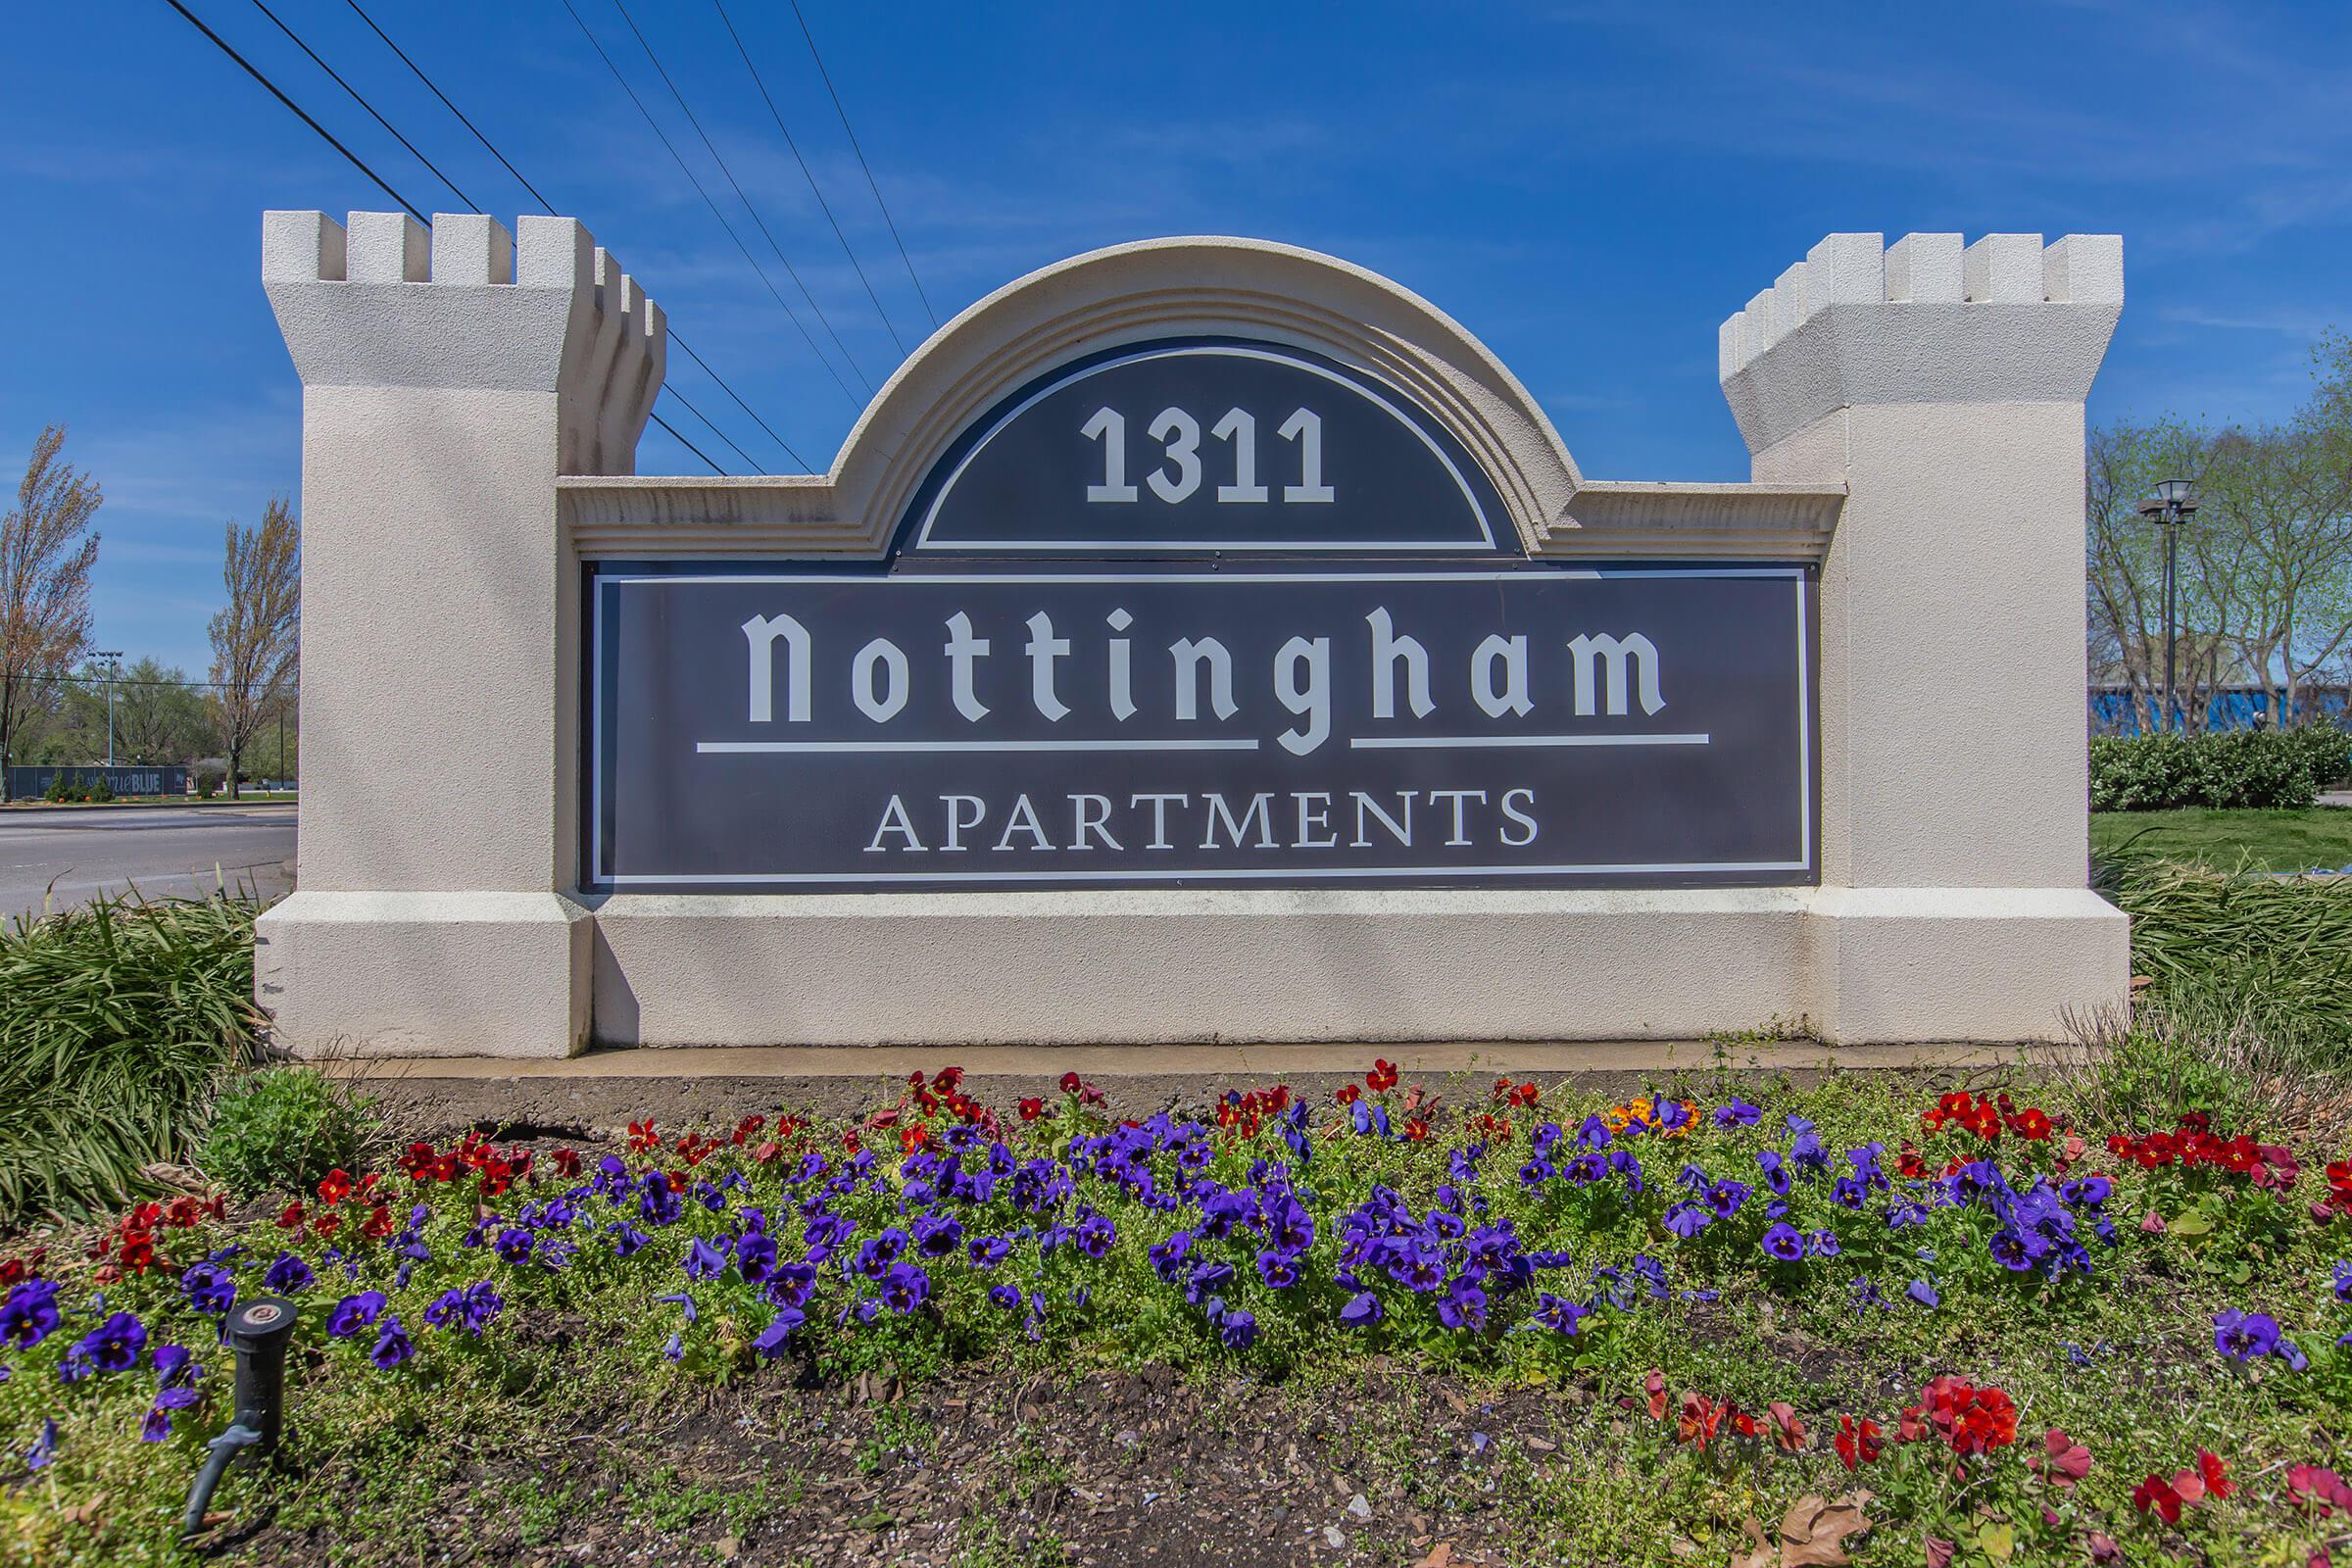 Nottingham apartments for rent in Murfreesboro